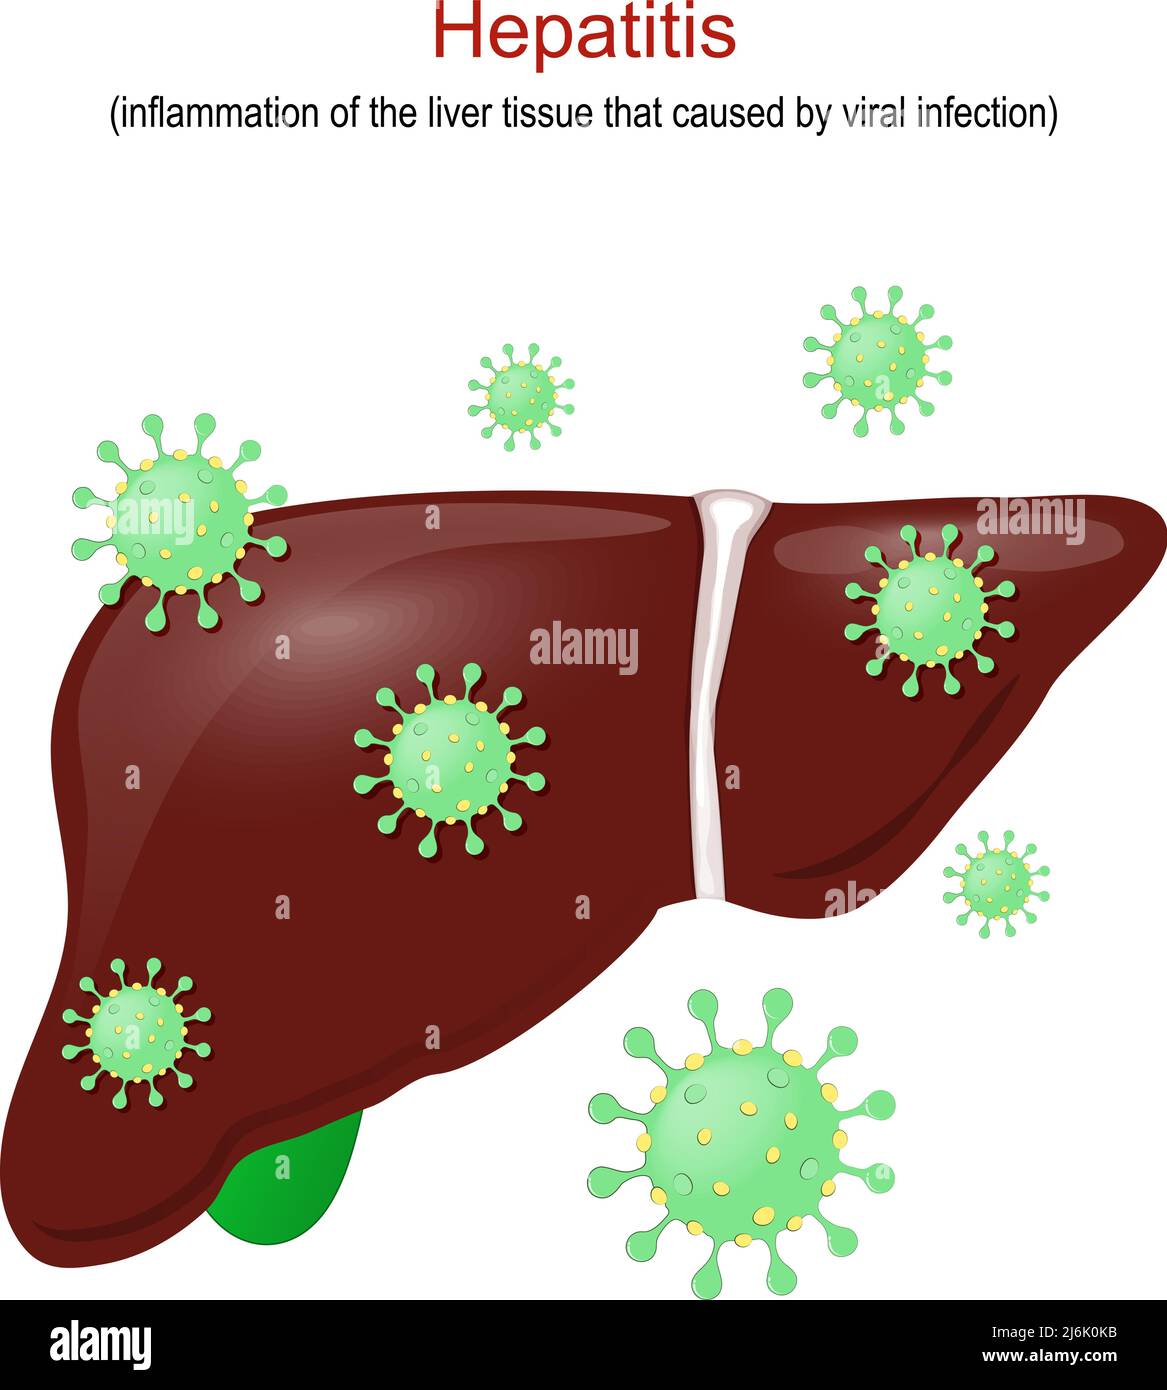 Hepatitis. Entzündung des Lebergewebes, die durch eine Virusinfektion verursacht wird. Leber des Menschen mit Virionen von Viren Hepatitis. Vektorgrafik Stock Vektor